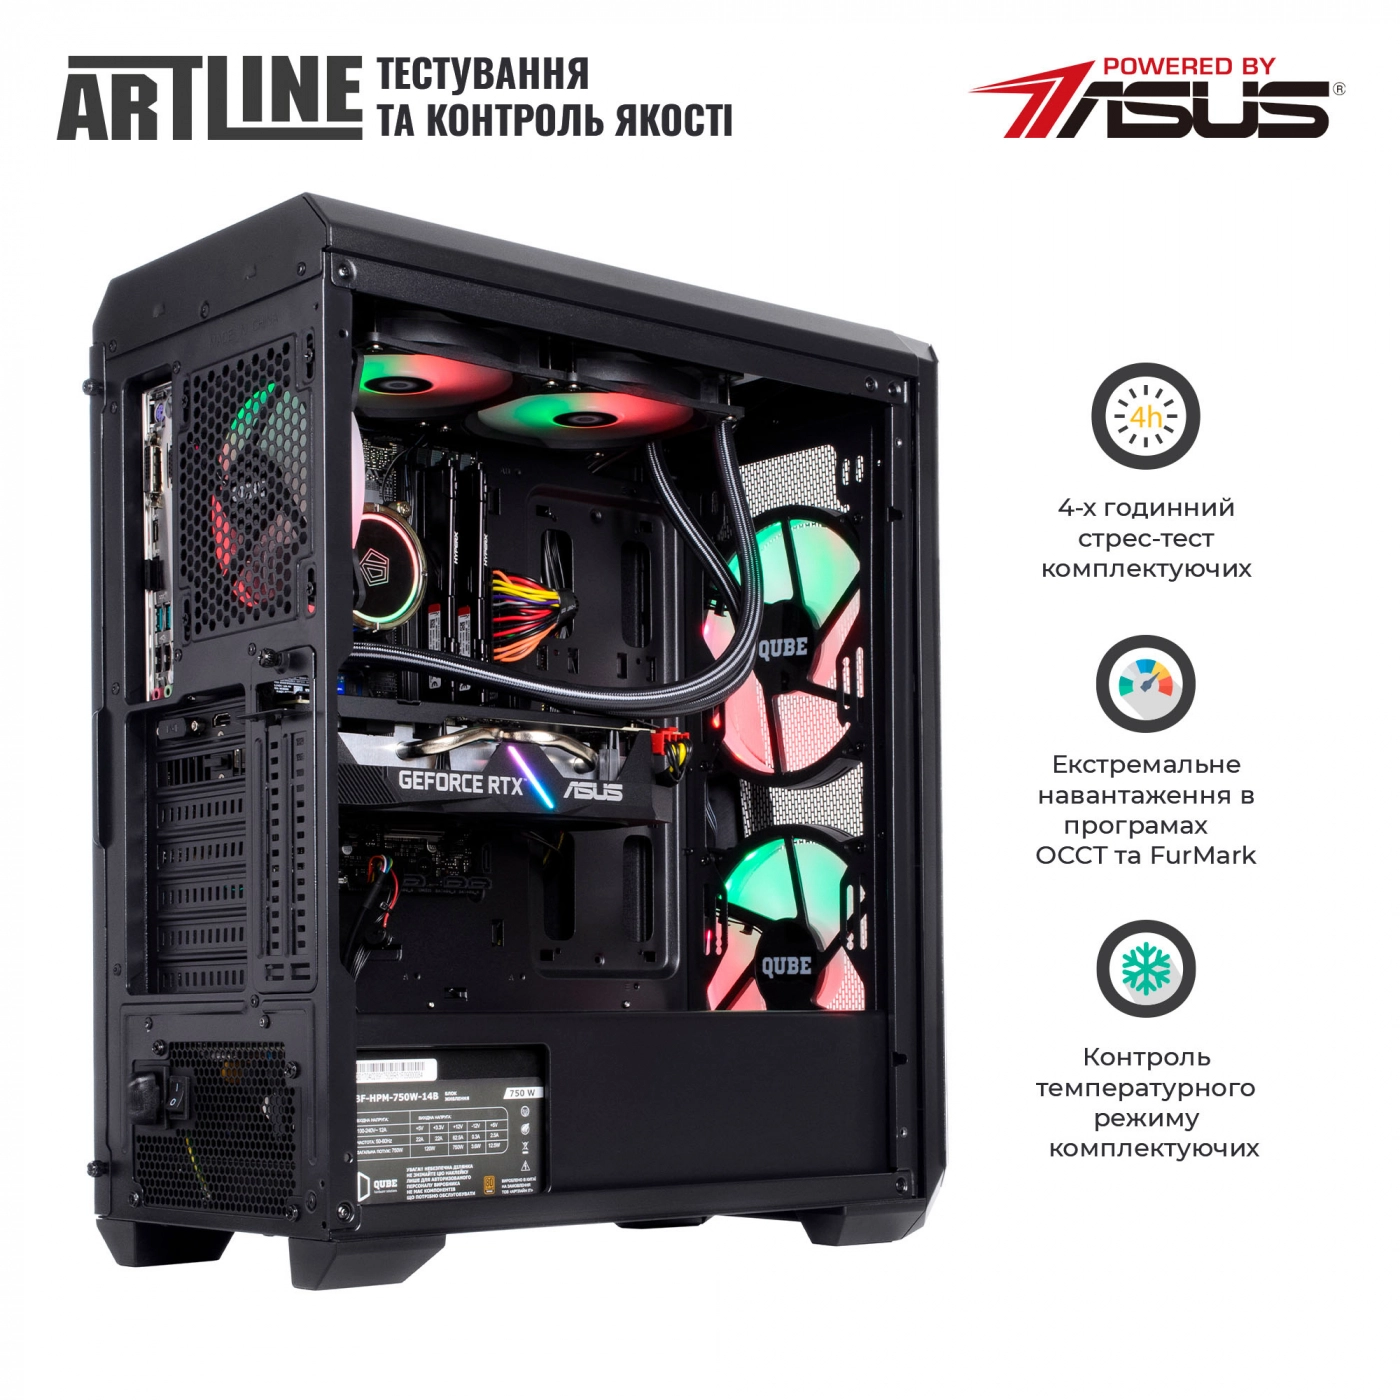 Купить Компьютер ARTLINE Gaming X85v26 - фото 7